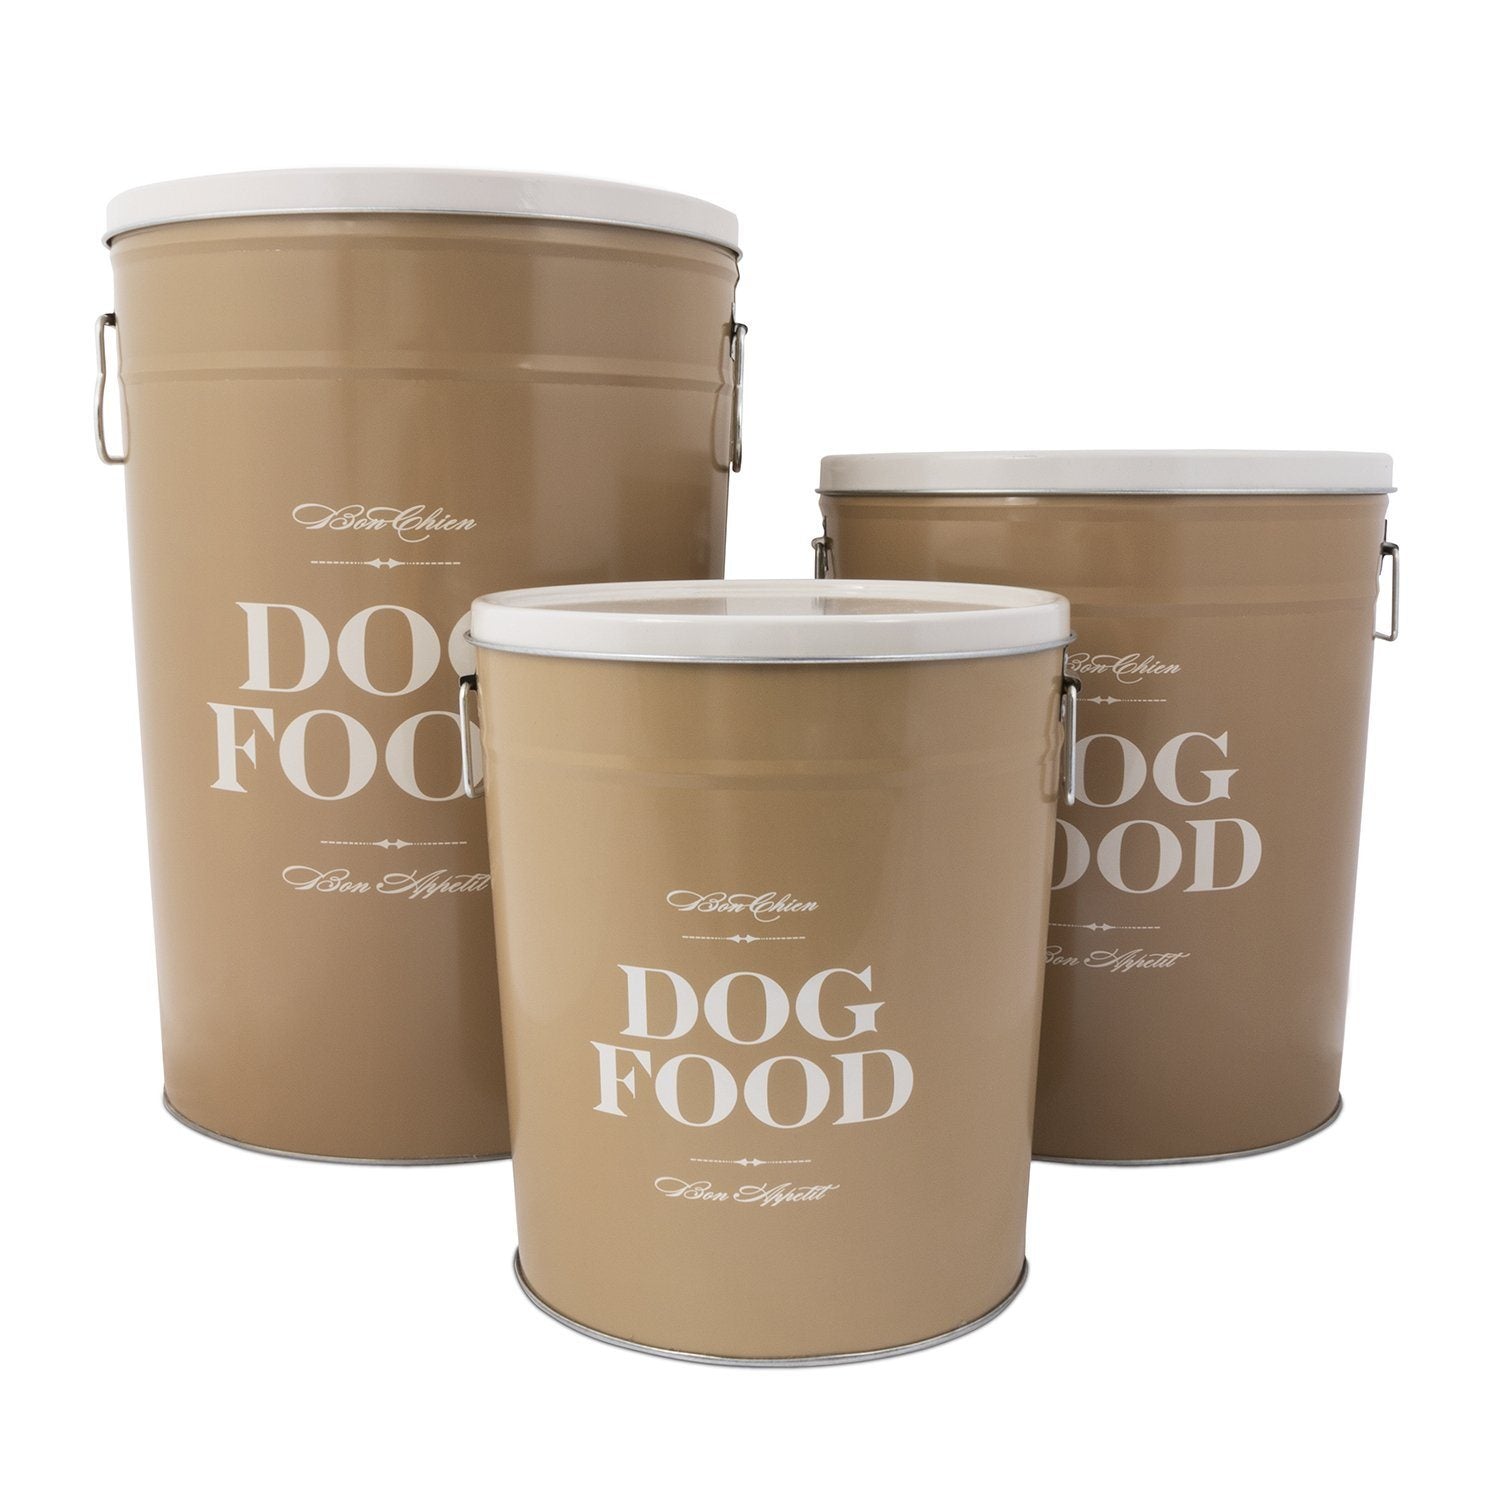 Food Storage - Bon Chien Dog Food Storage